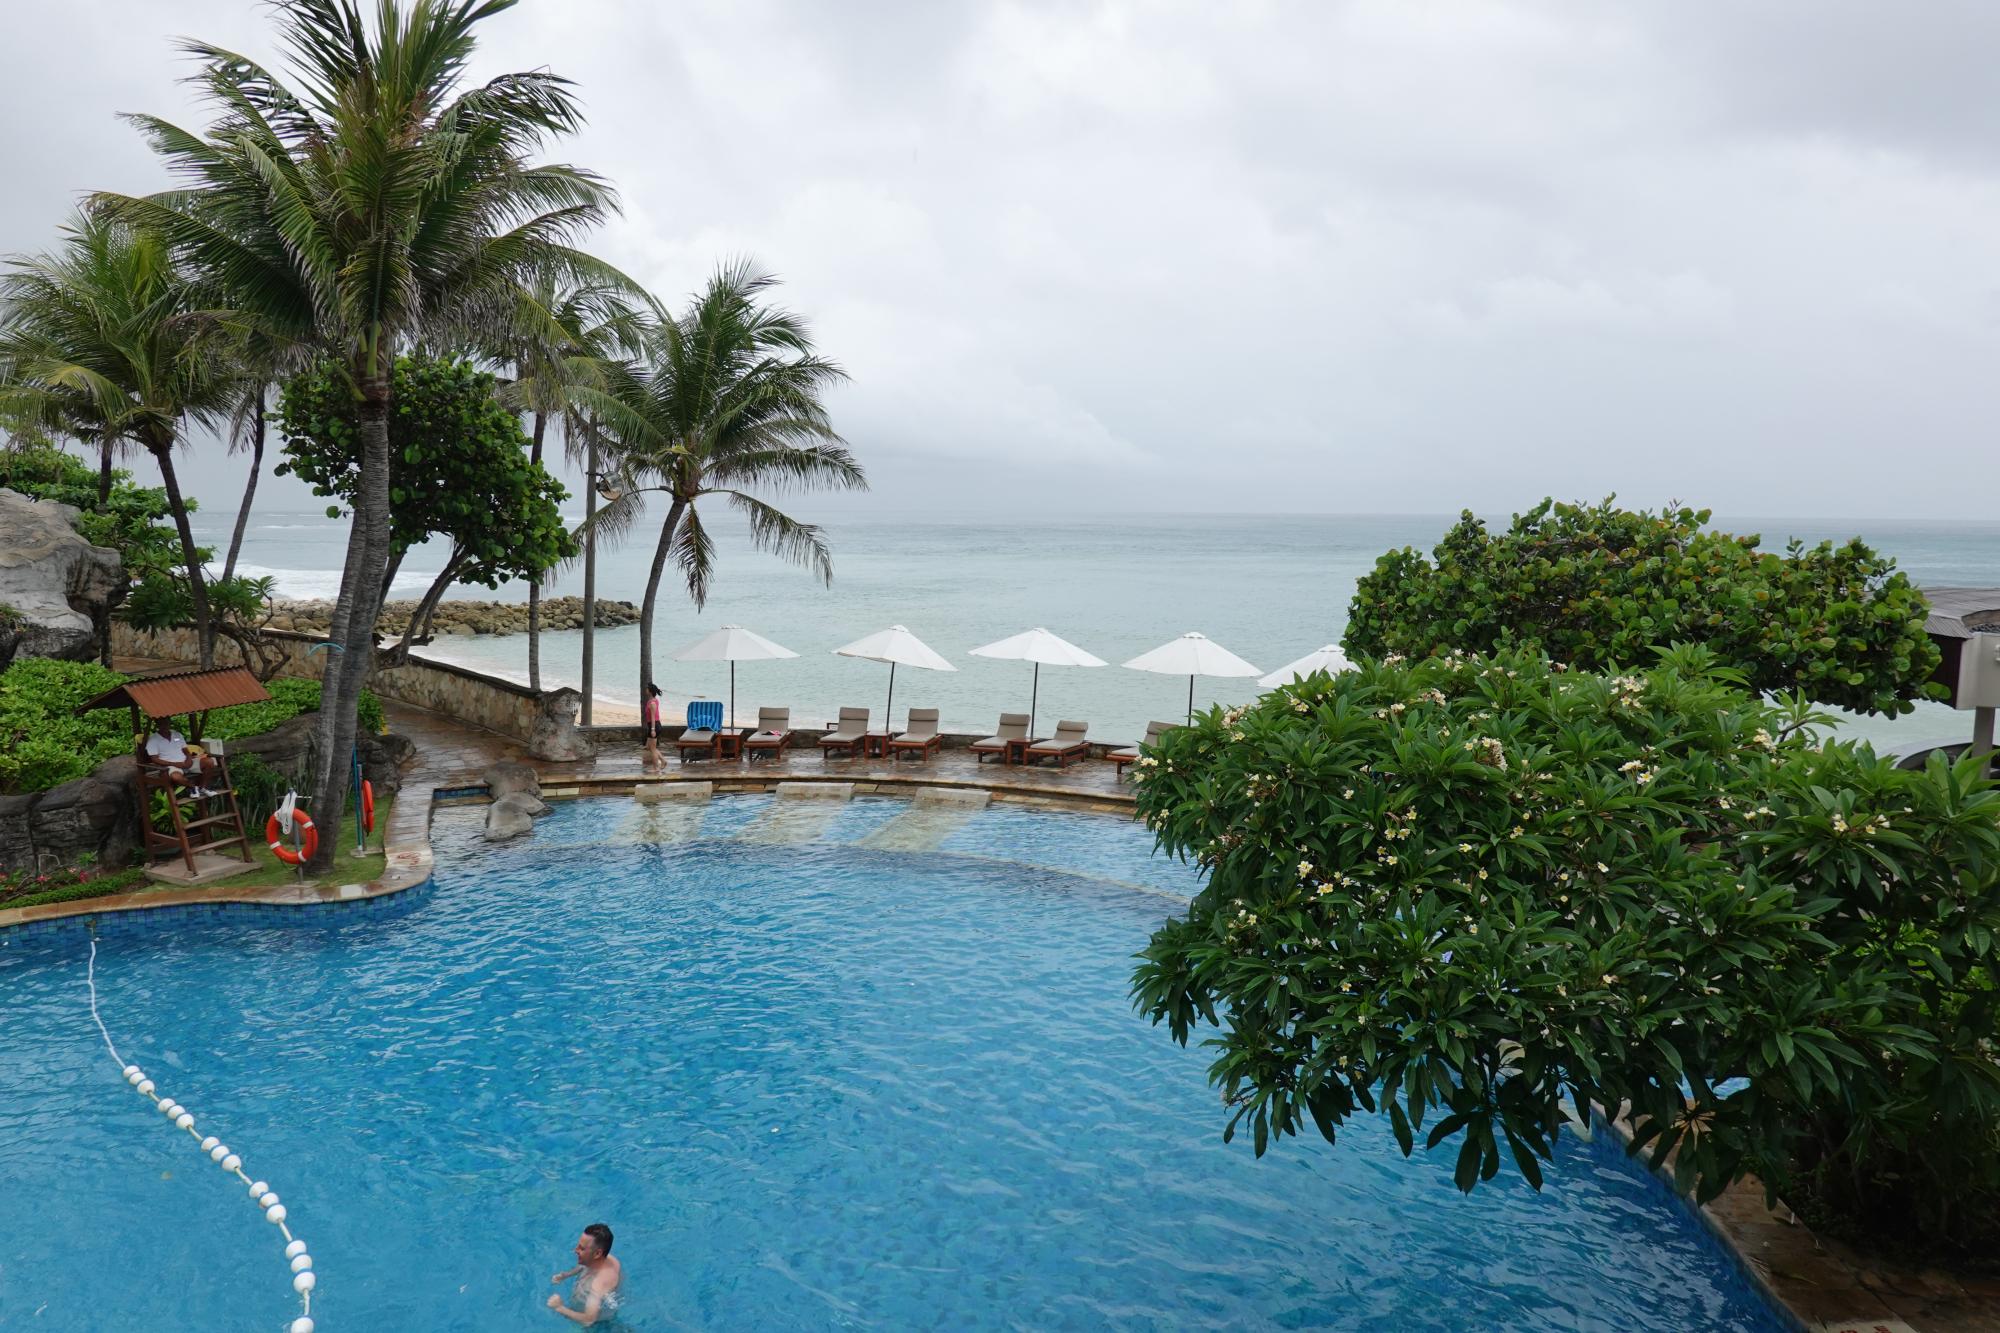 Bali - Hilton Pool #4